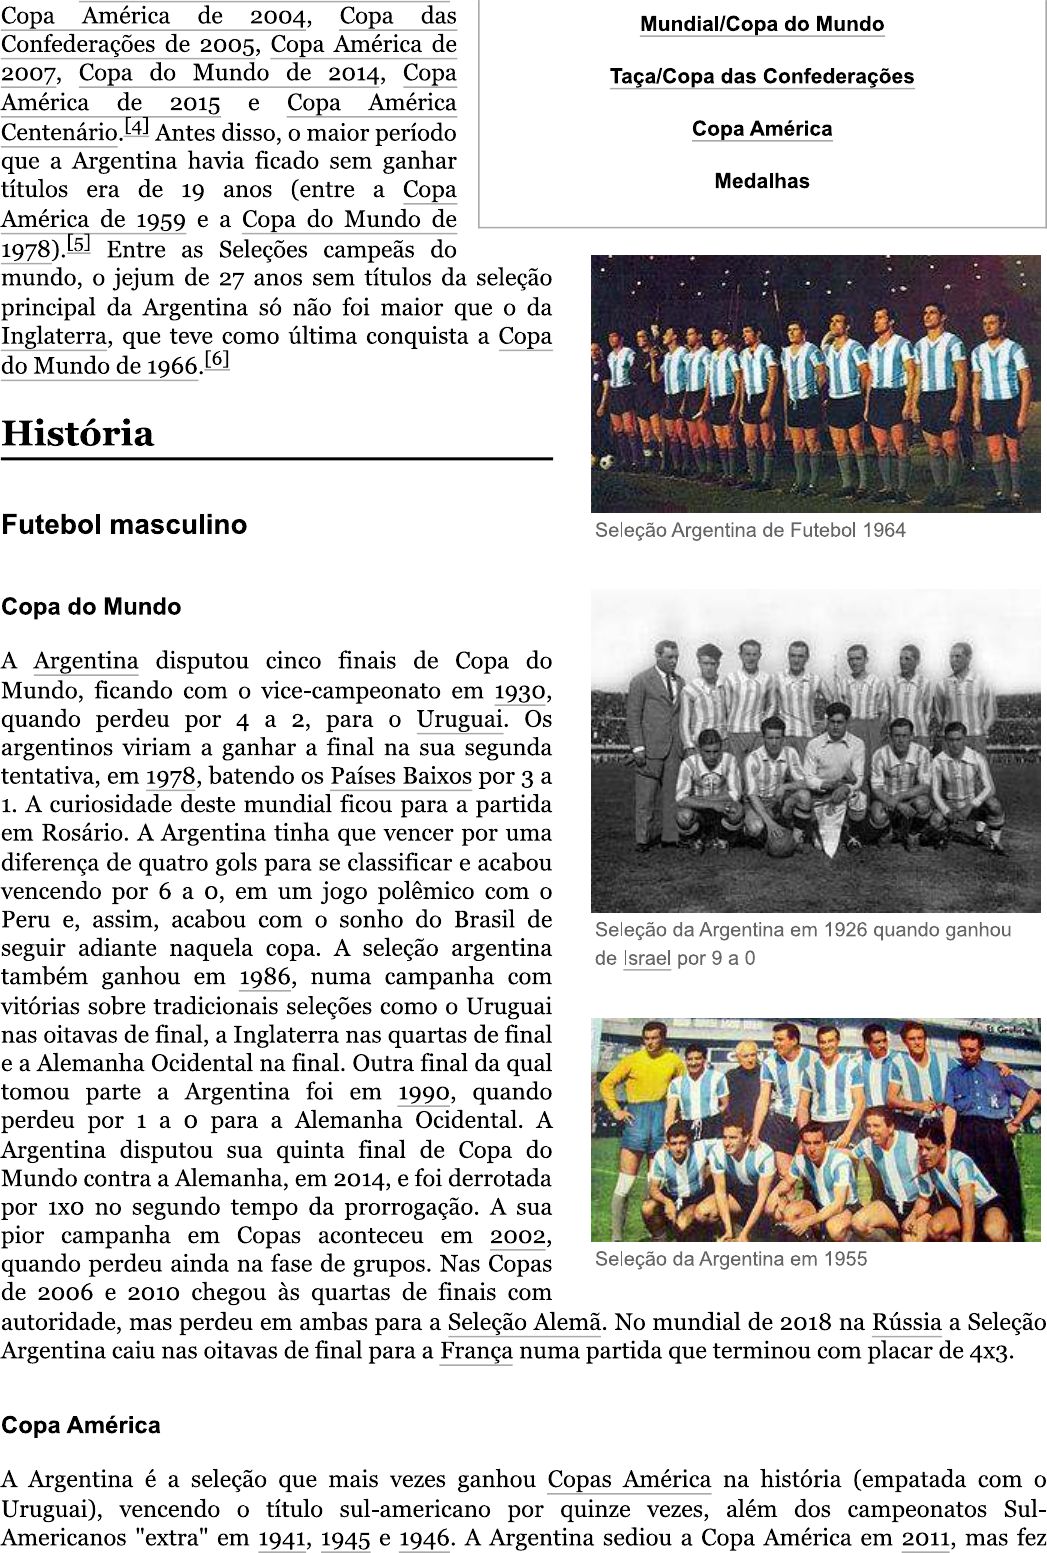 Argentina-Brasil em futebol – Wikipédia, a enciclopédia livre